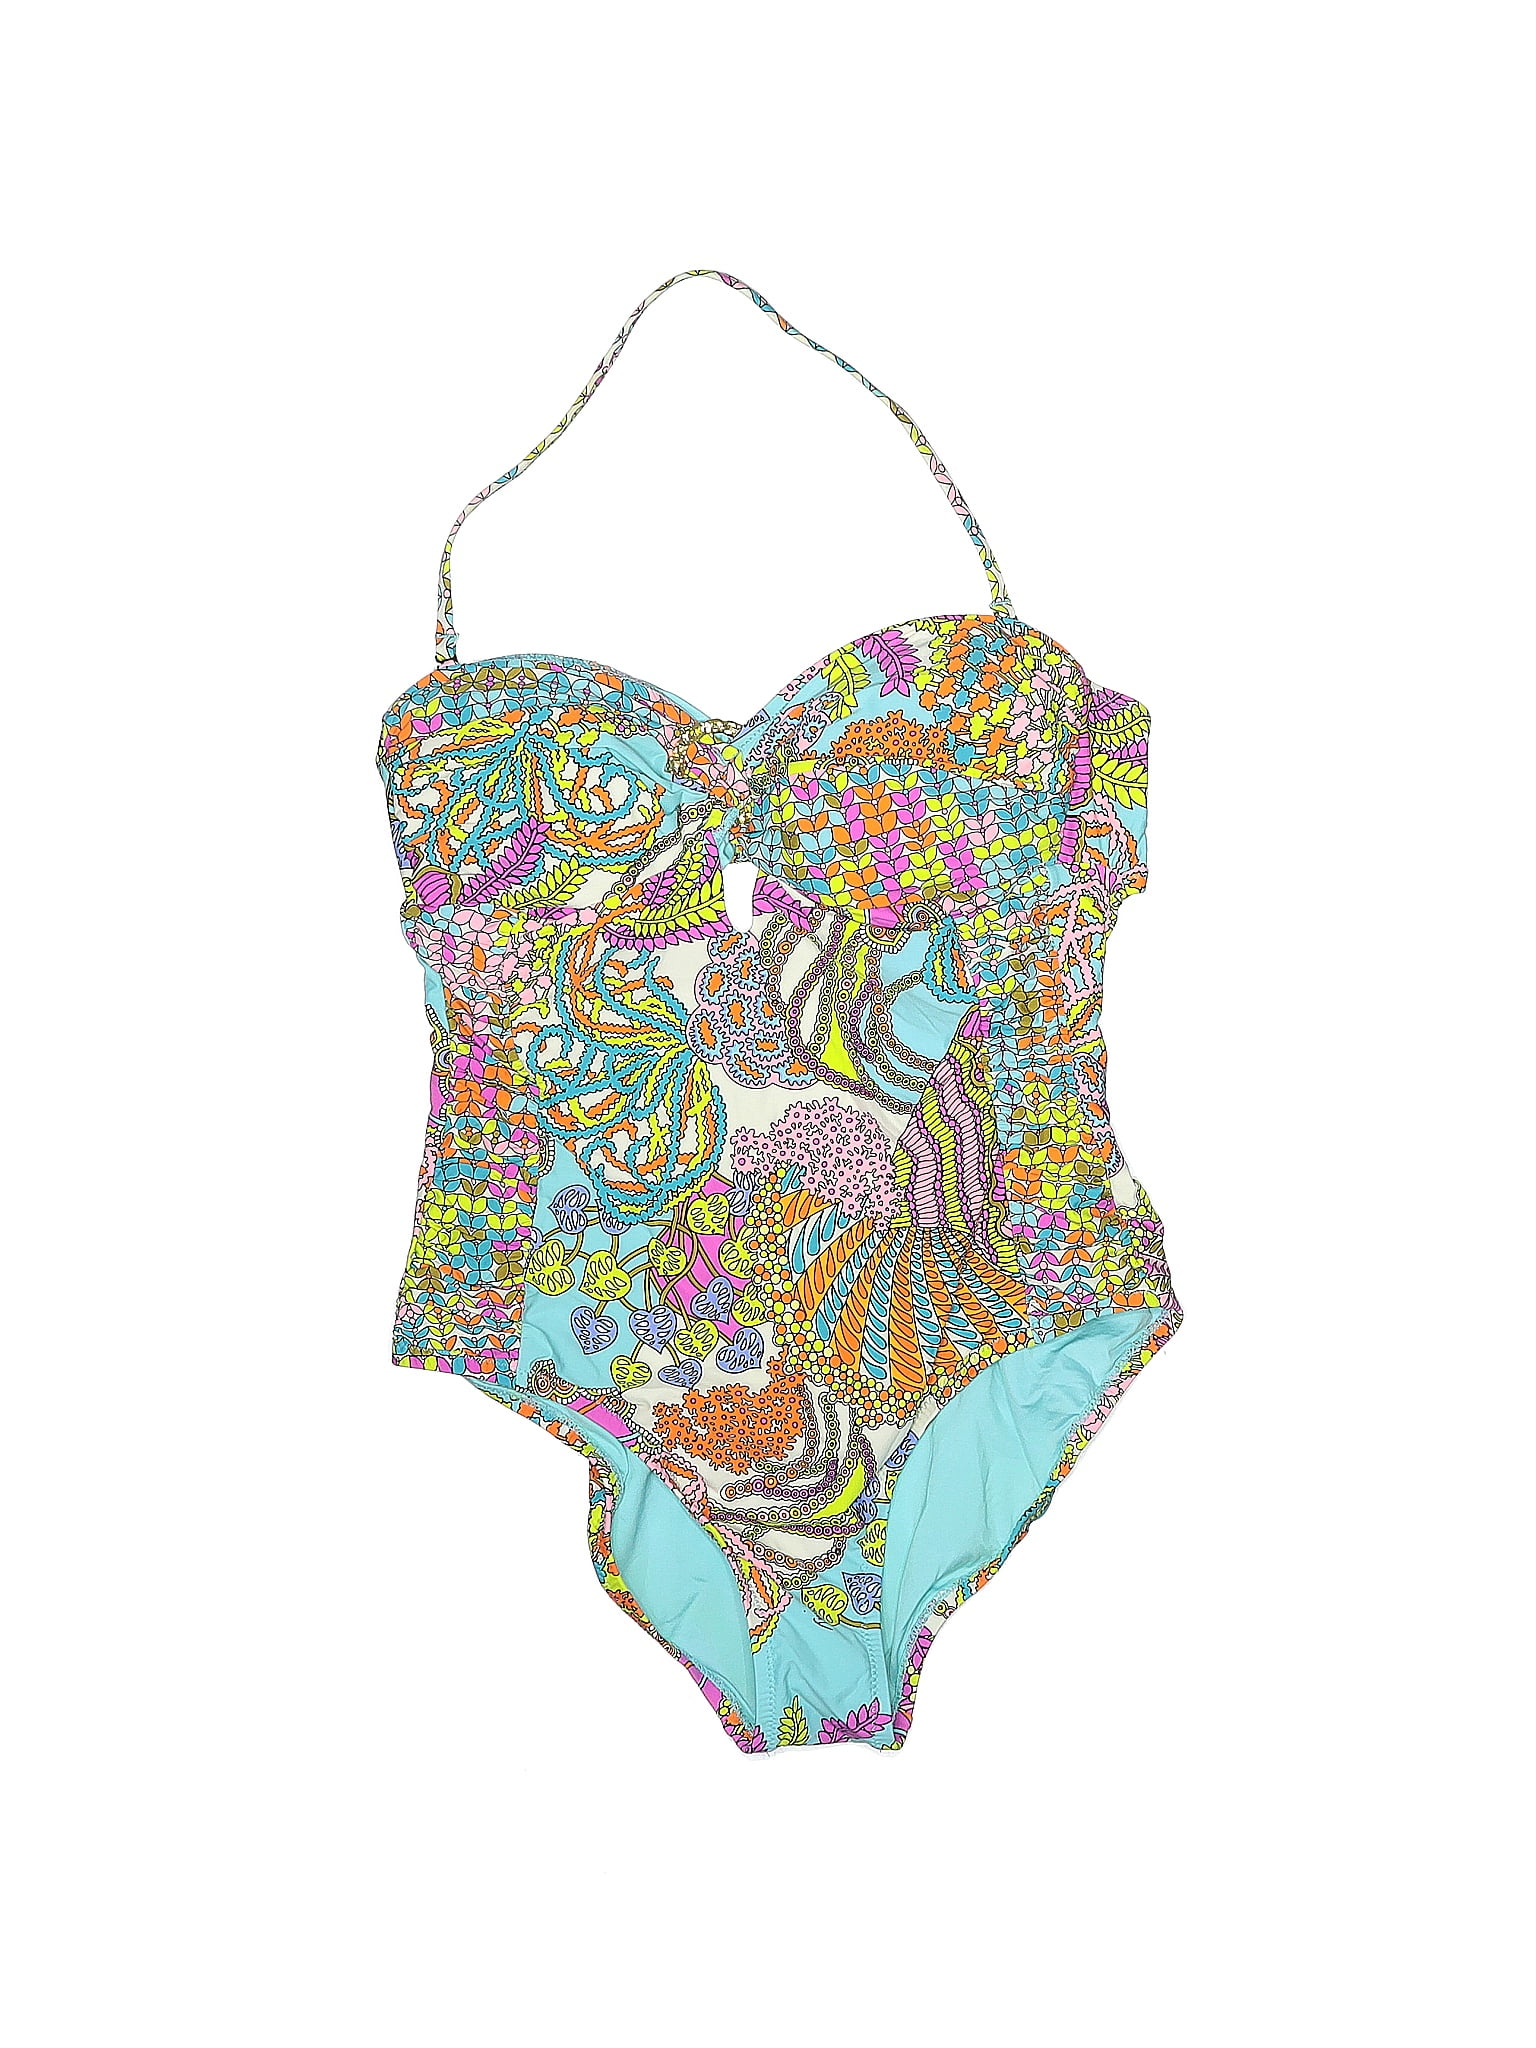 Trina Turk Multi Color Blue One Piece Swimsuit Size 10 - 68% off | thredUP